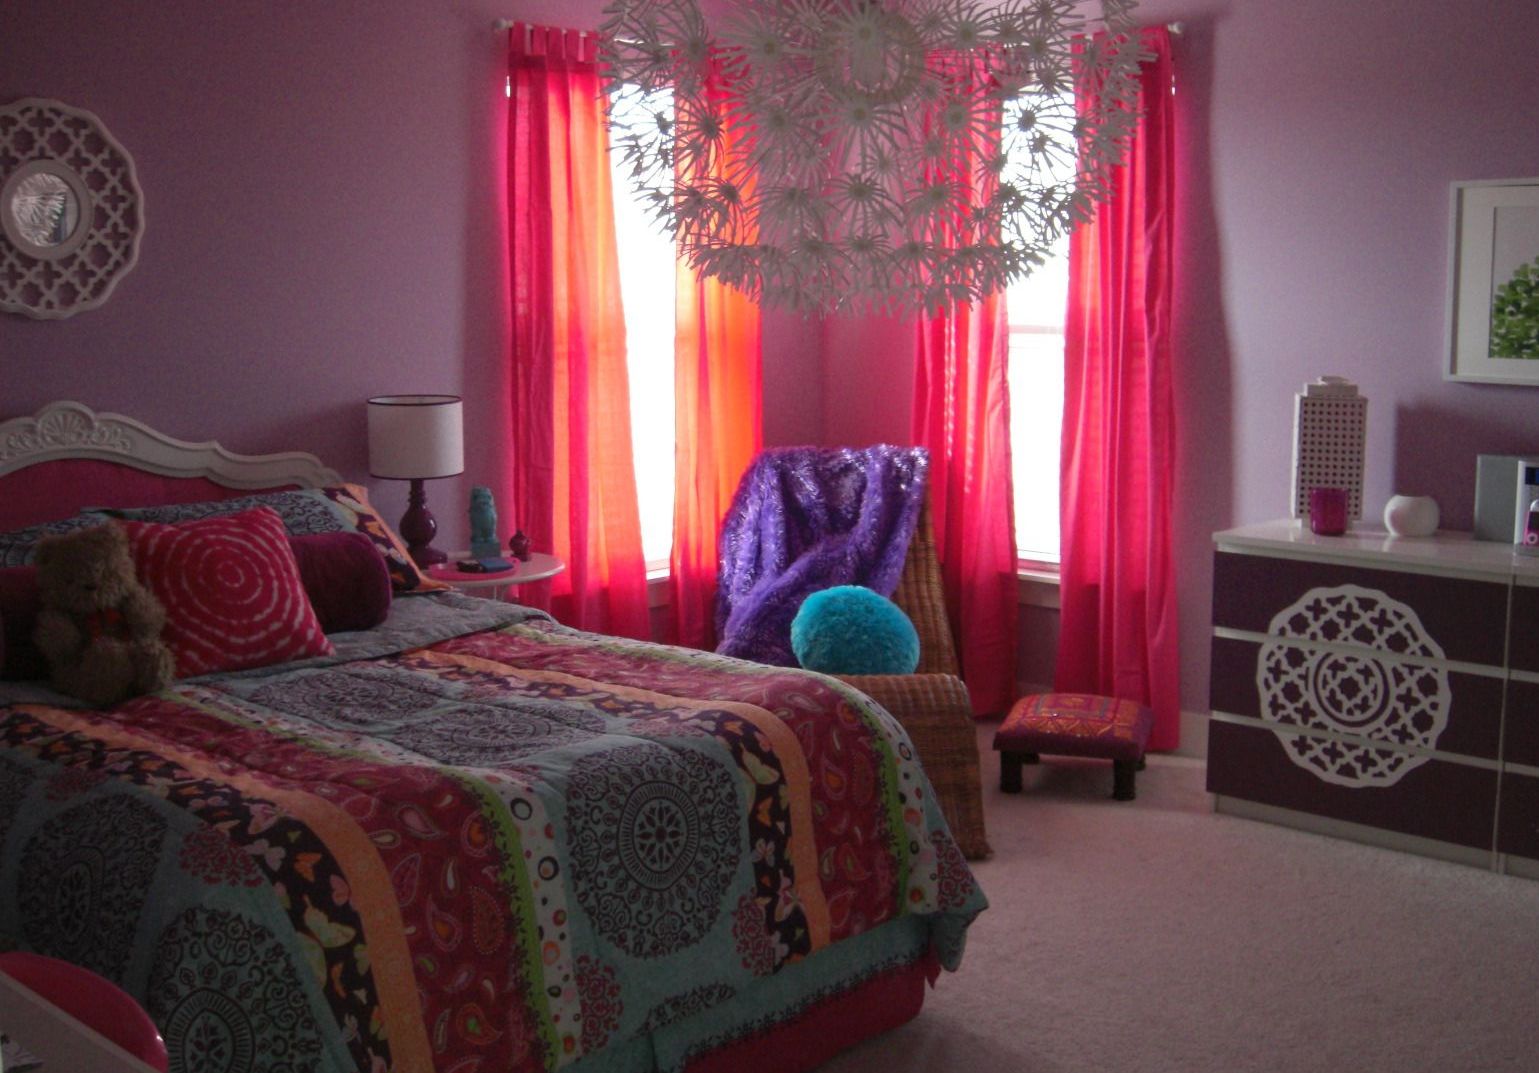 bohemian decor bedding